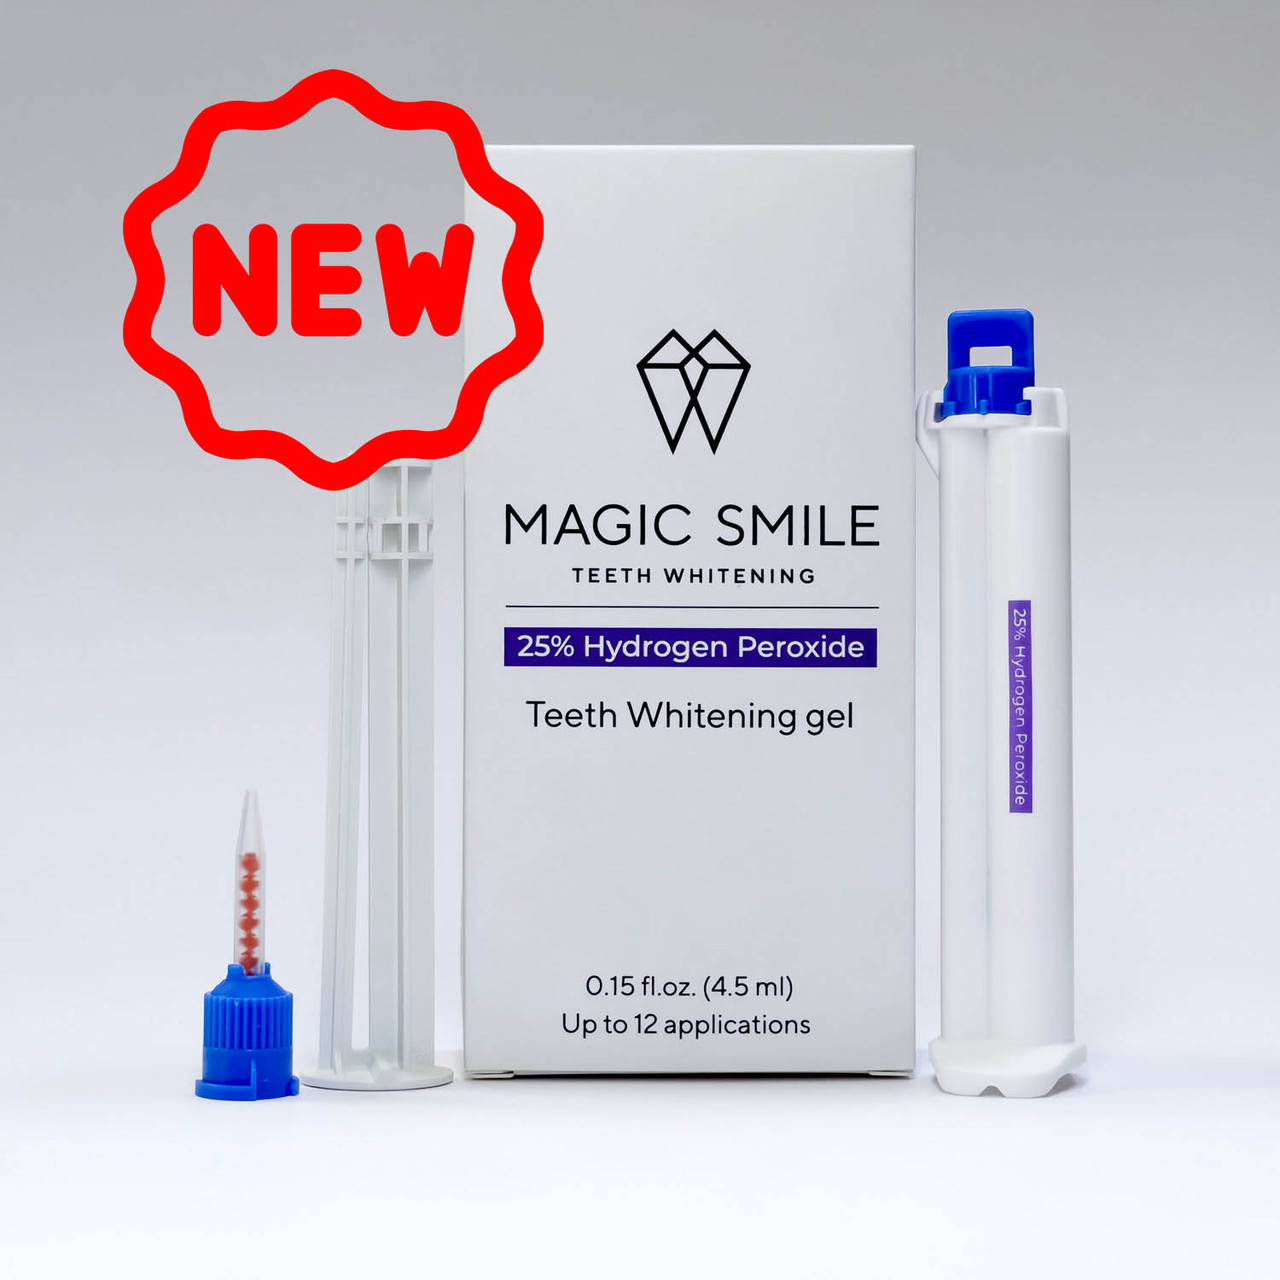 _Magic Smile Перекис 25% Hydrogen Peroxide Refill. Гель для відбілювання зубів. До 4 пациентов.